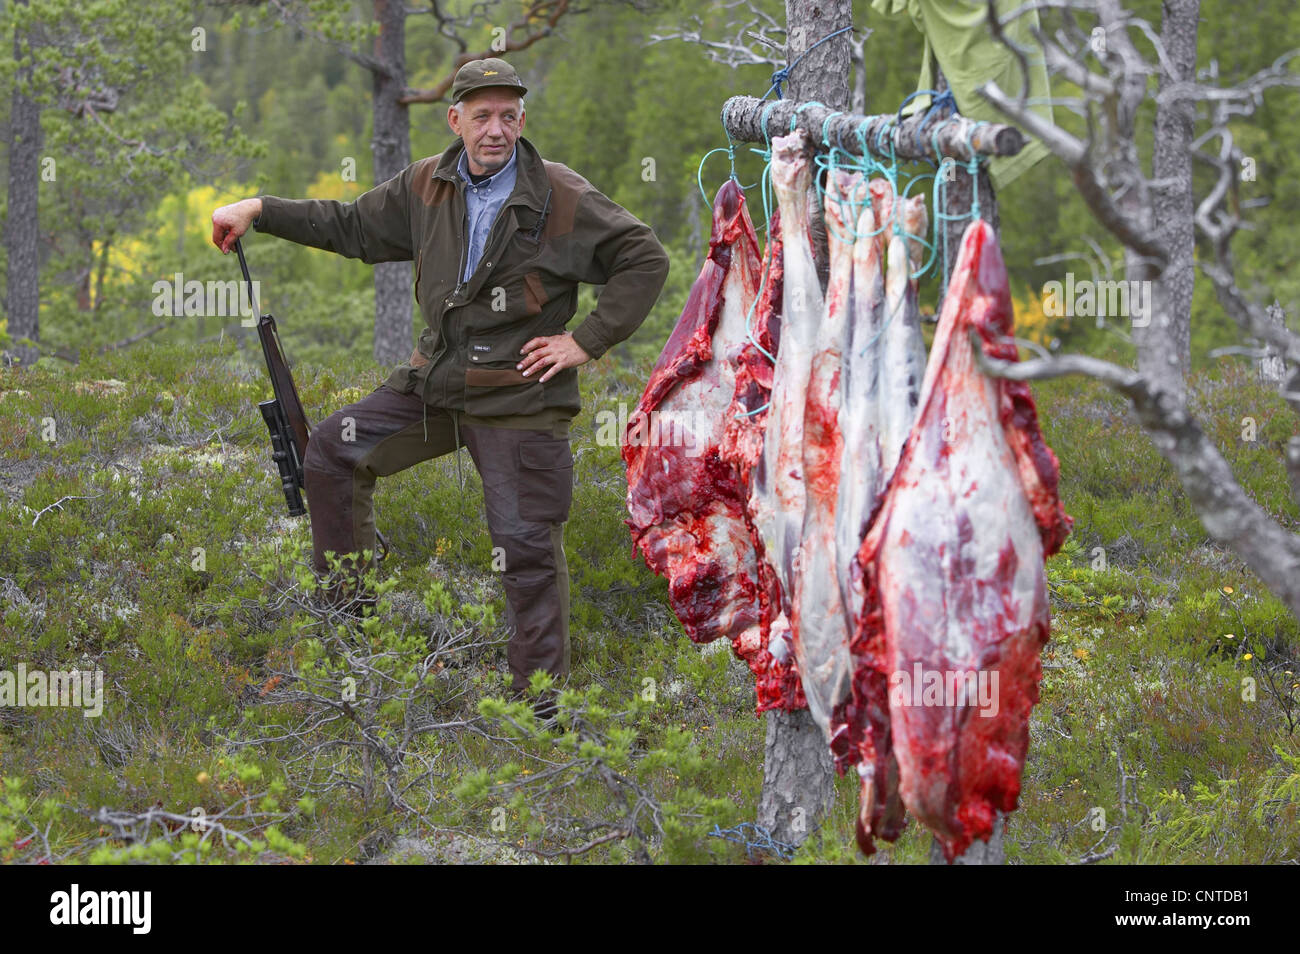 Le wapiti, l'orignal (Alces alces alces), chasseur dans la forêt s'appuyant sur son fusil à côté d'une rangée de pièces d'un animal dépecé suspendu entre les arbres, de la Norvège, de Nord-Trondelag, Flatanger Banque D'Images